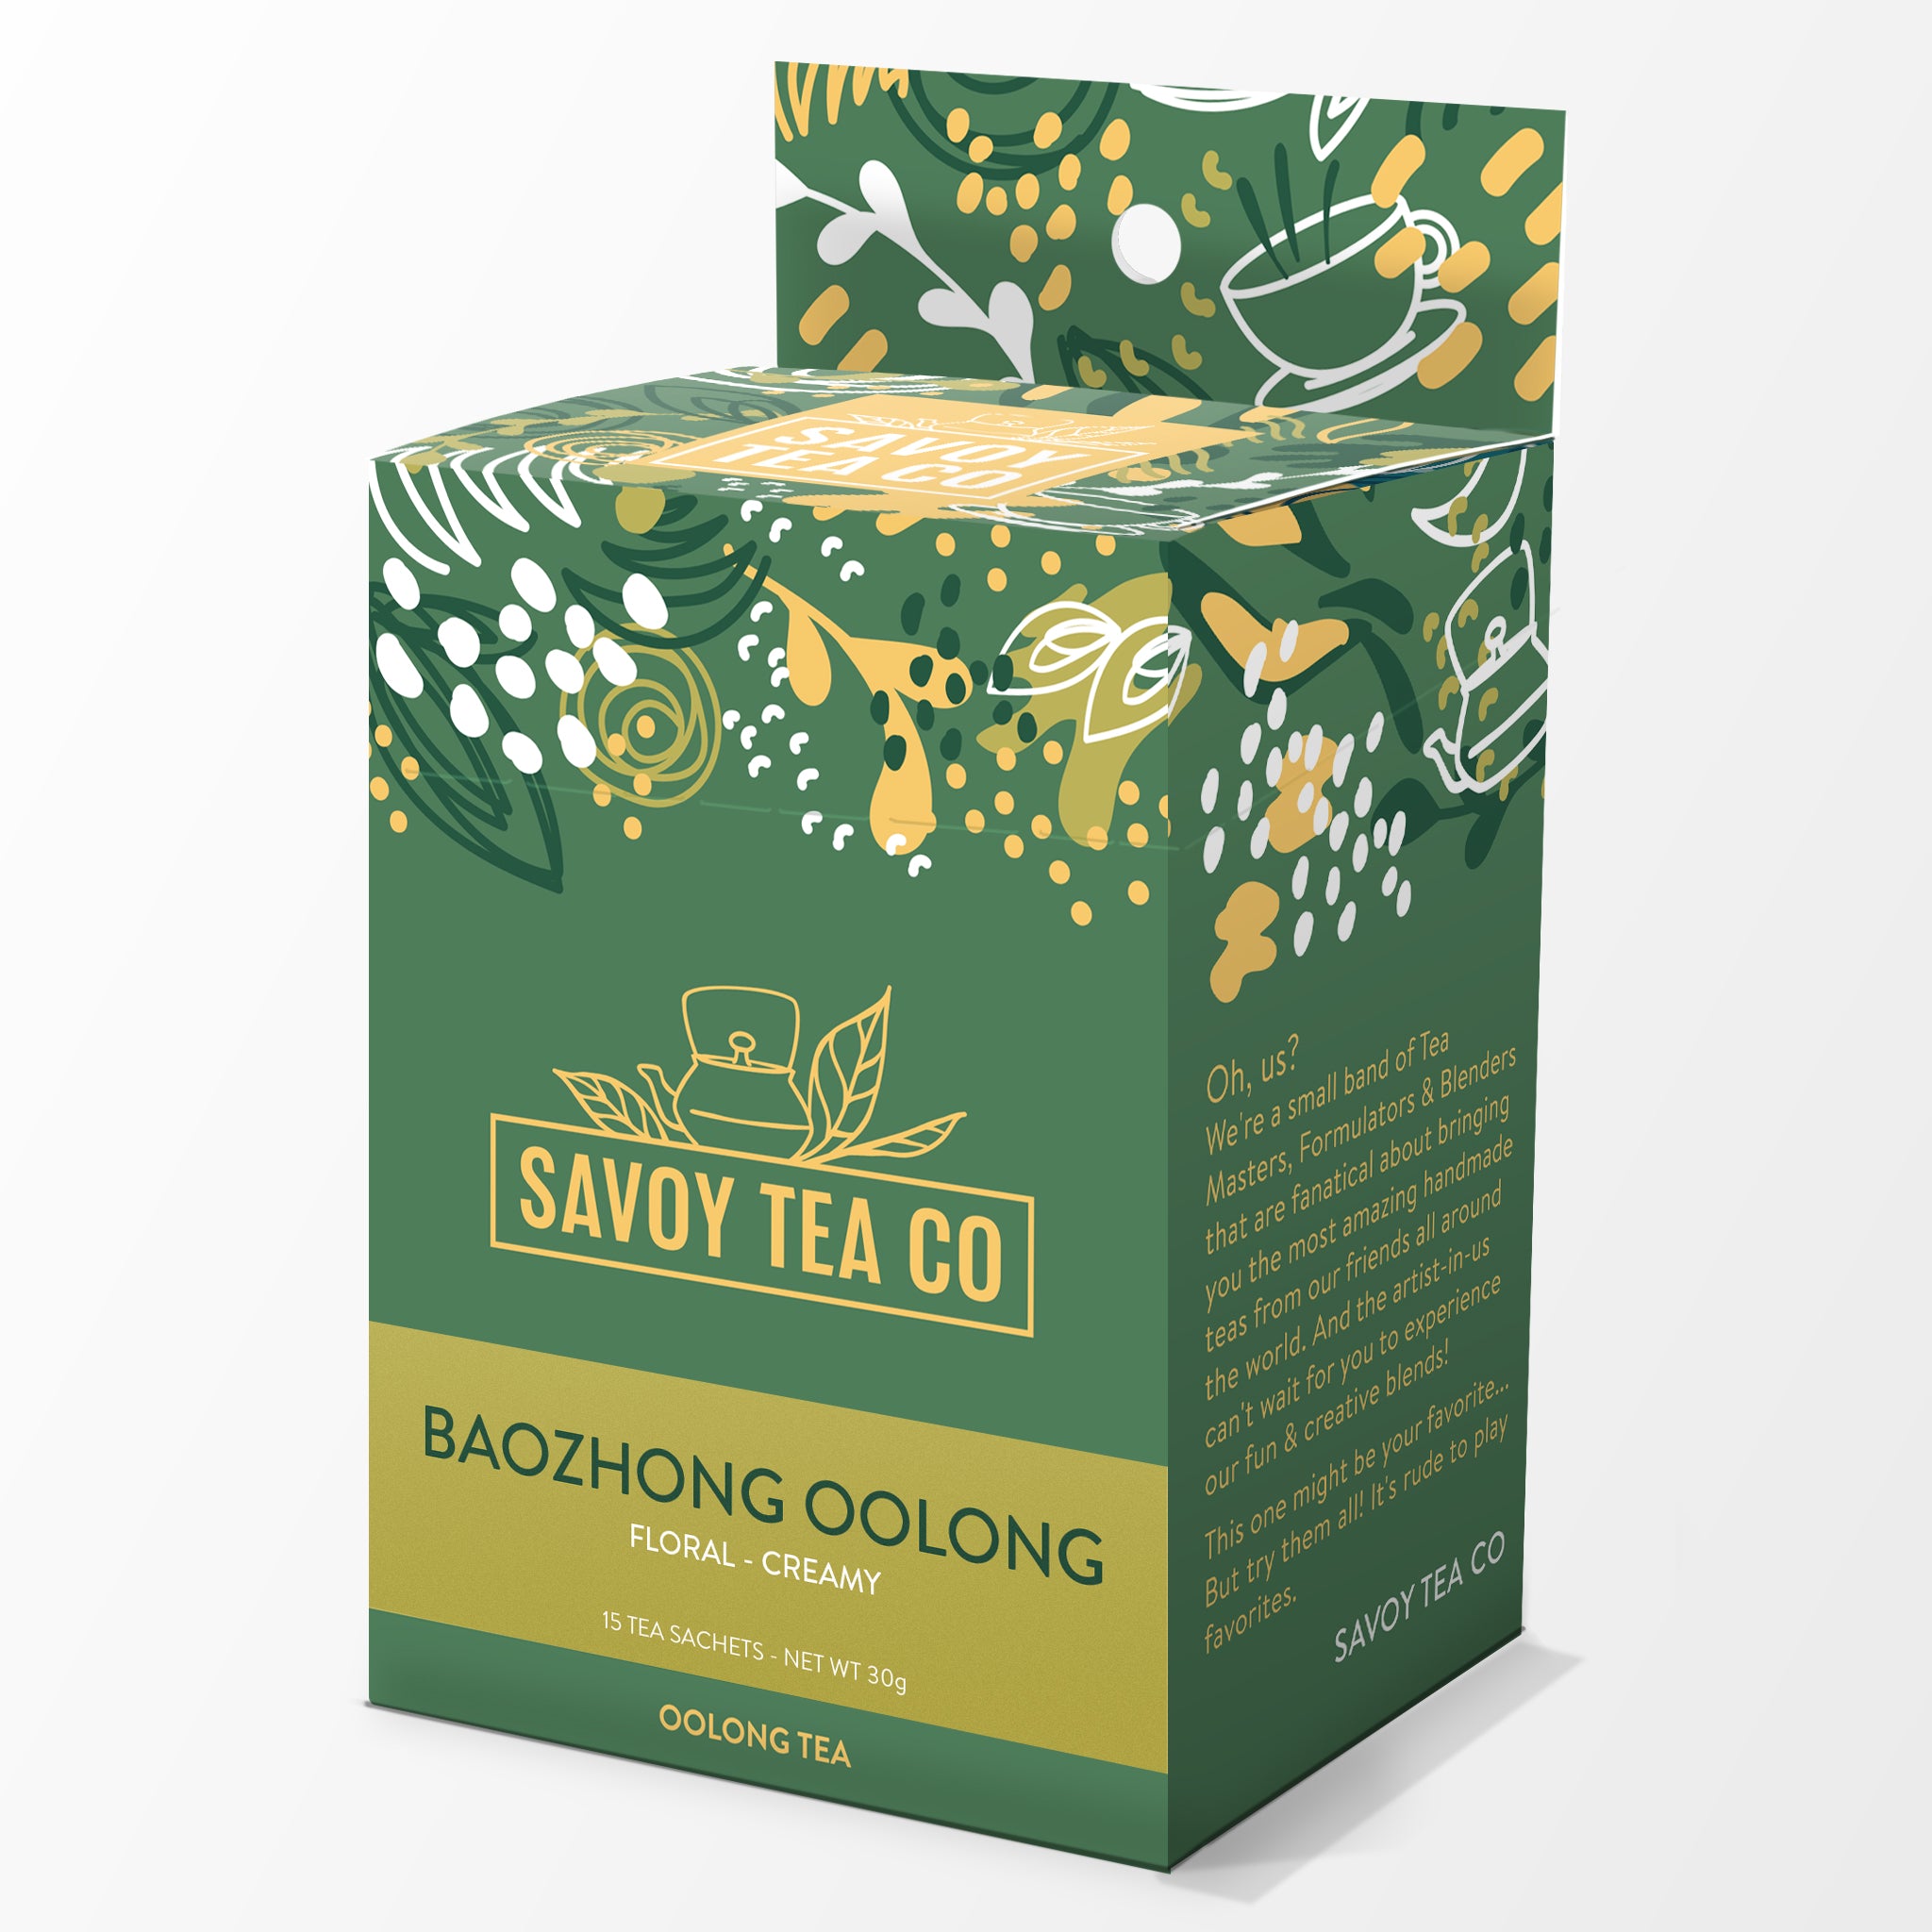 Baozhong Oolong Organic